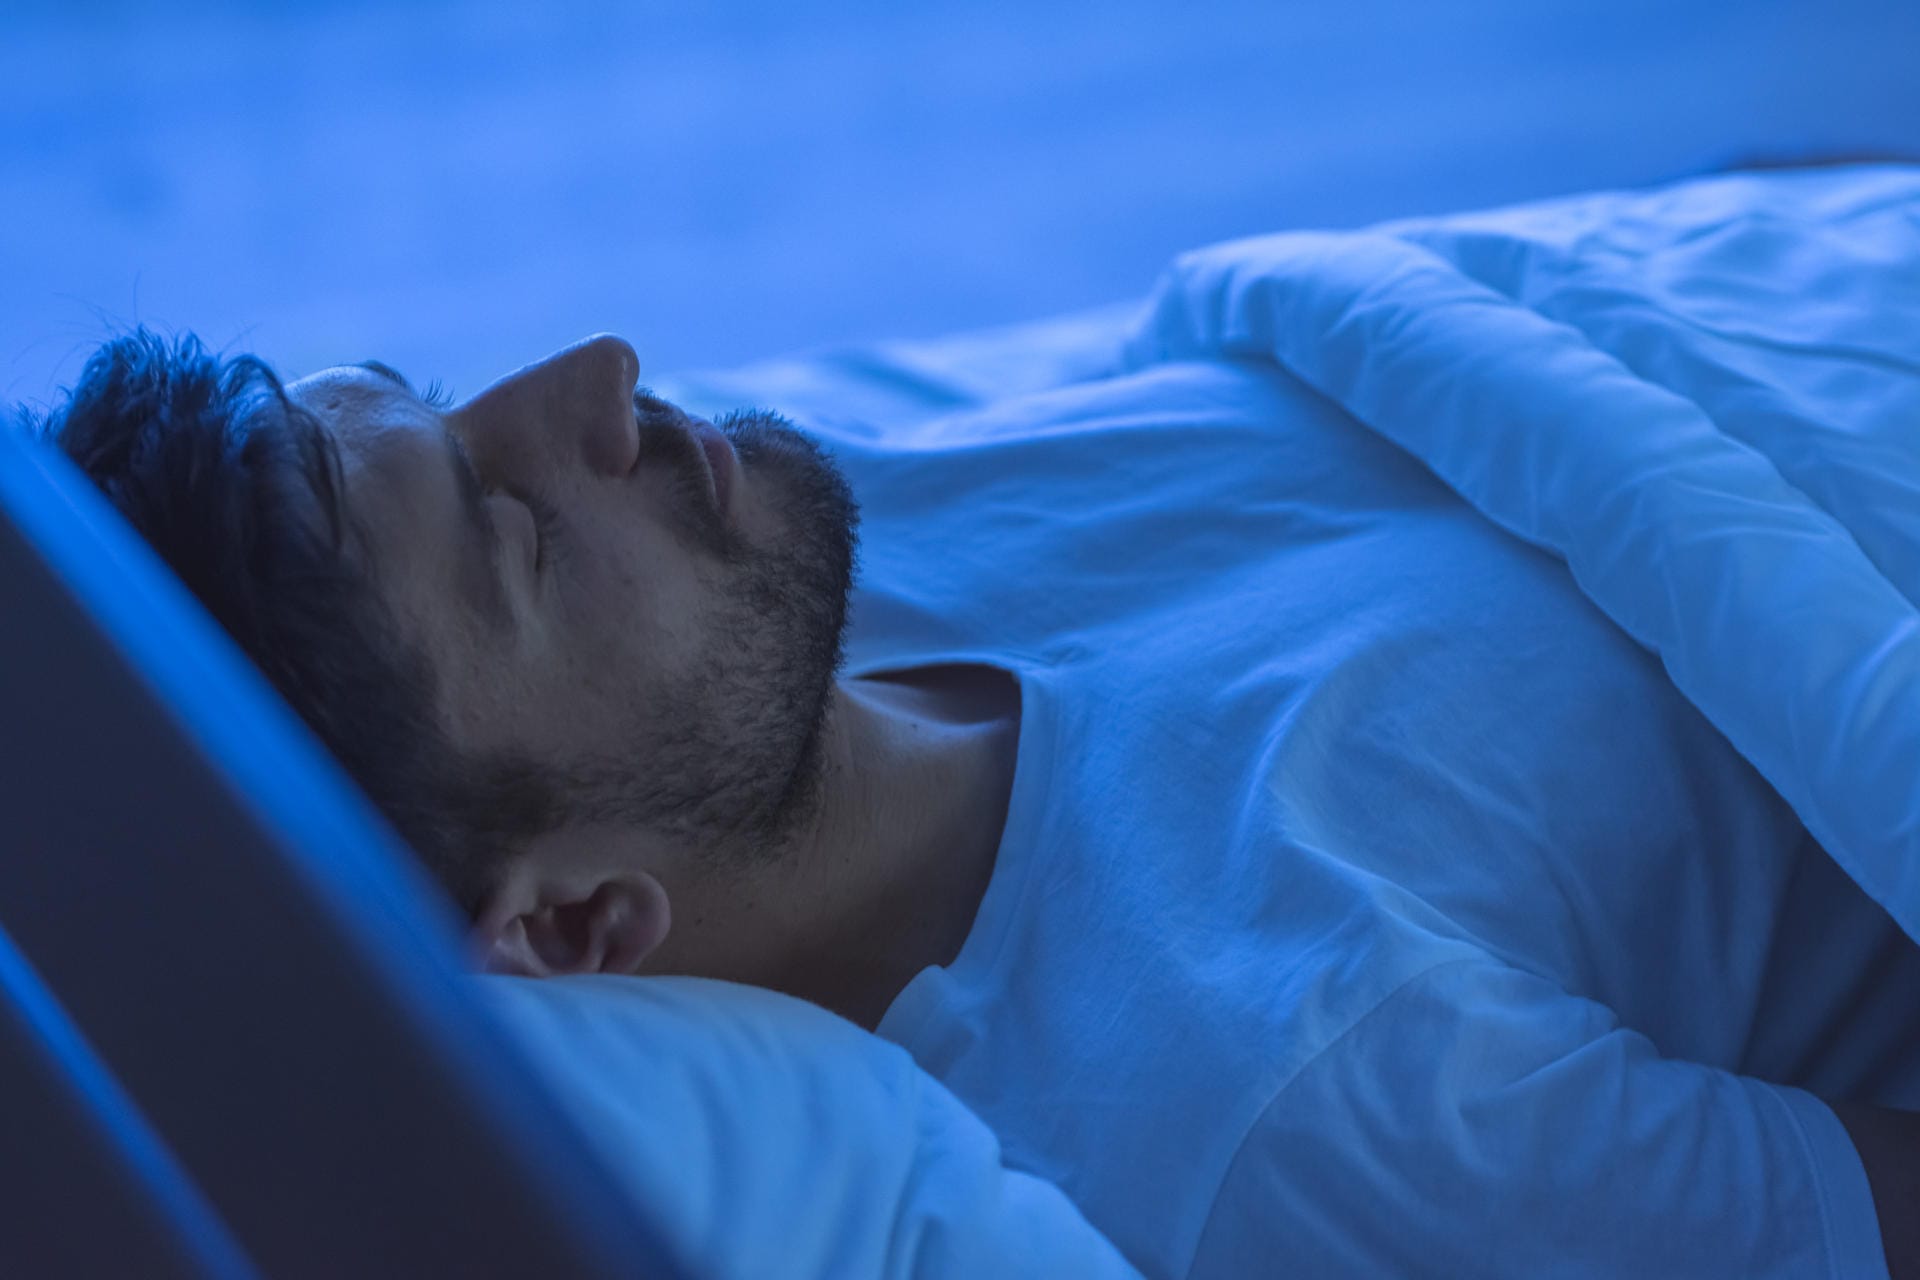 Schlafmangel schwächt das Immunsystem. Auch das Stresshormon Kortisol steigt, wenn die Nachtruhe regelmäßig kurz ausfällt. Wer fit bleiben will, schläft mindestens sechs, besser aber sieben bis acht Stunden täglich.